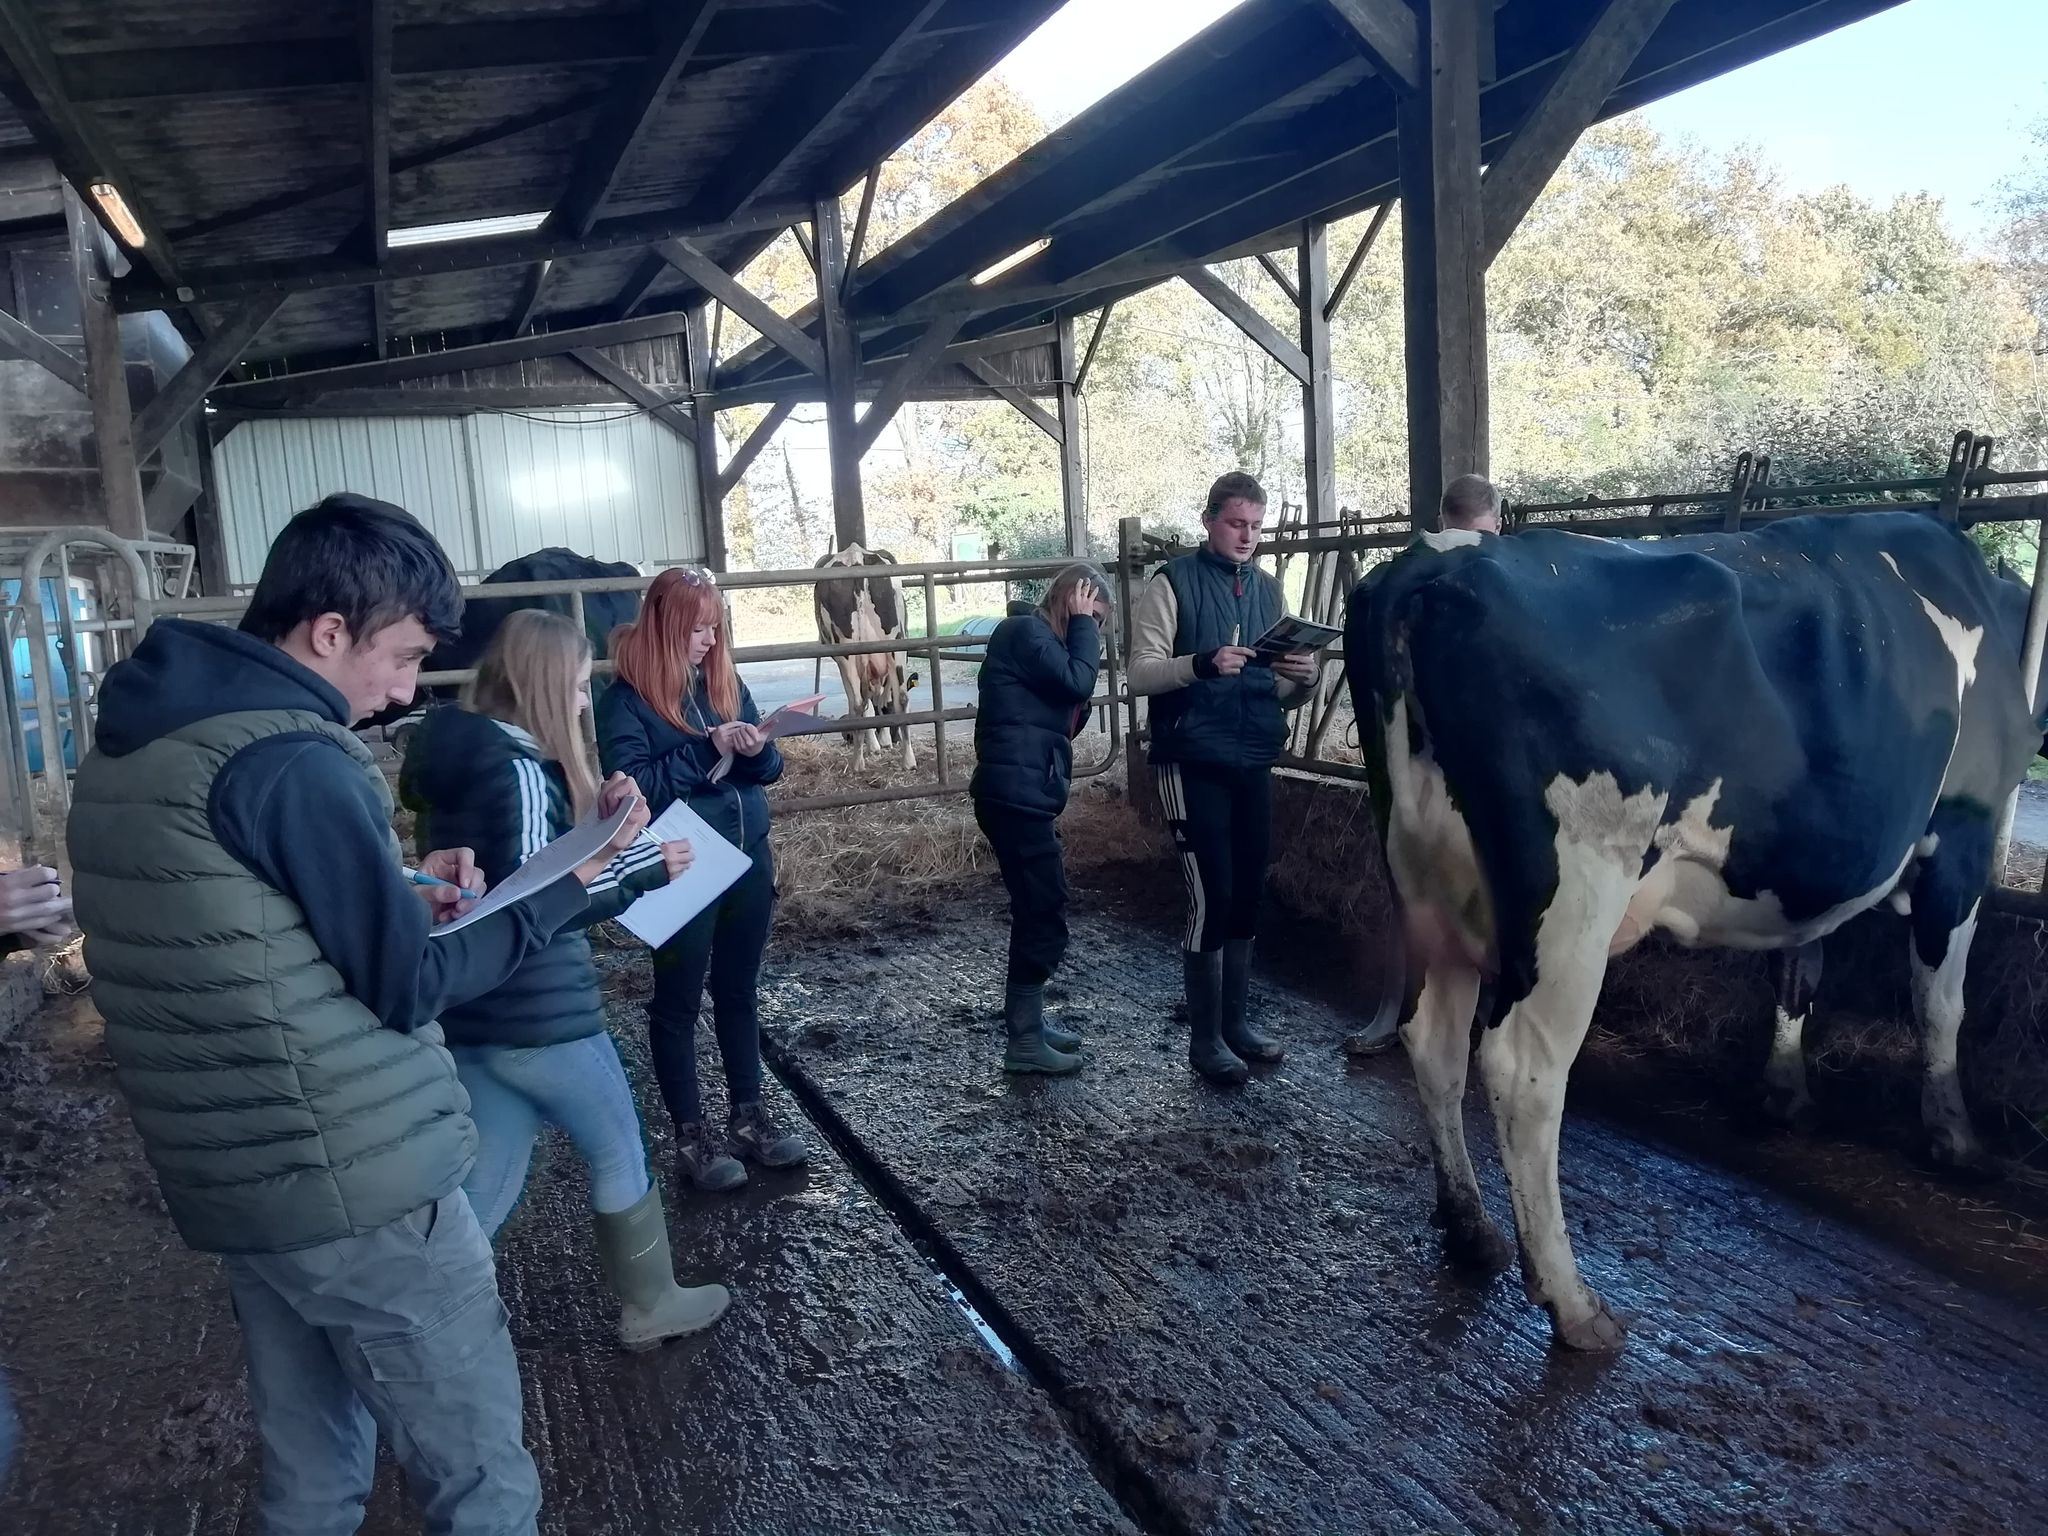 Lire la suite à propos de l’article Journée technique orientée sur l’élevage pour les apprenants de Term CGEA